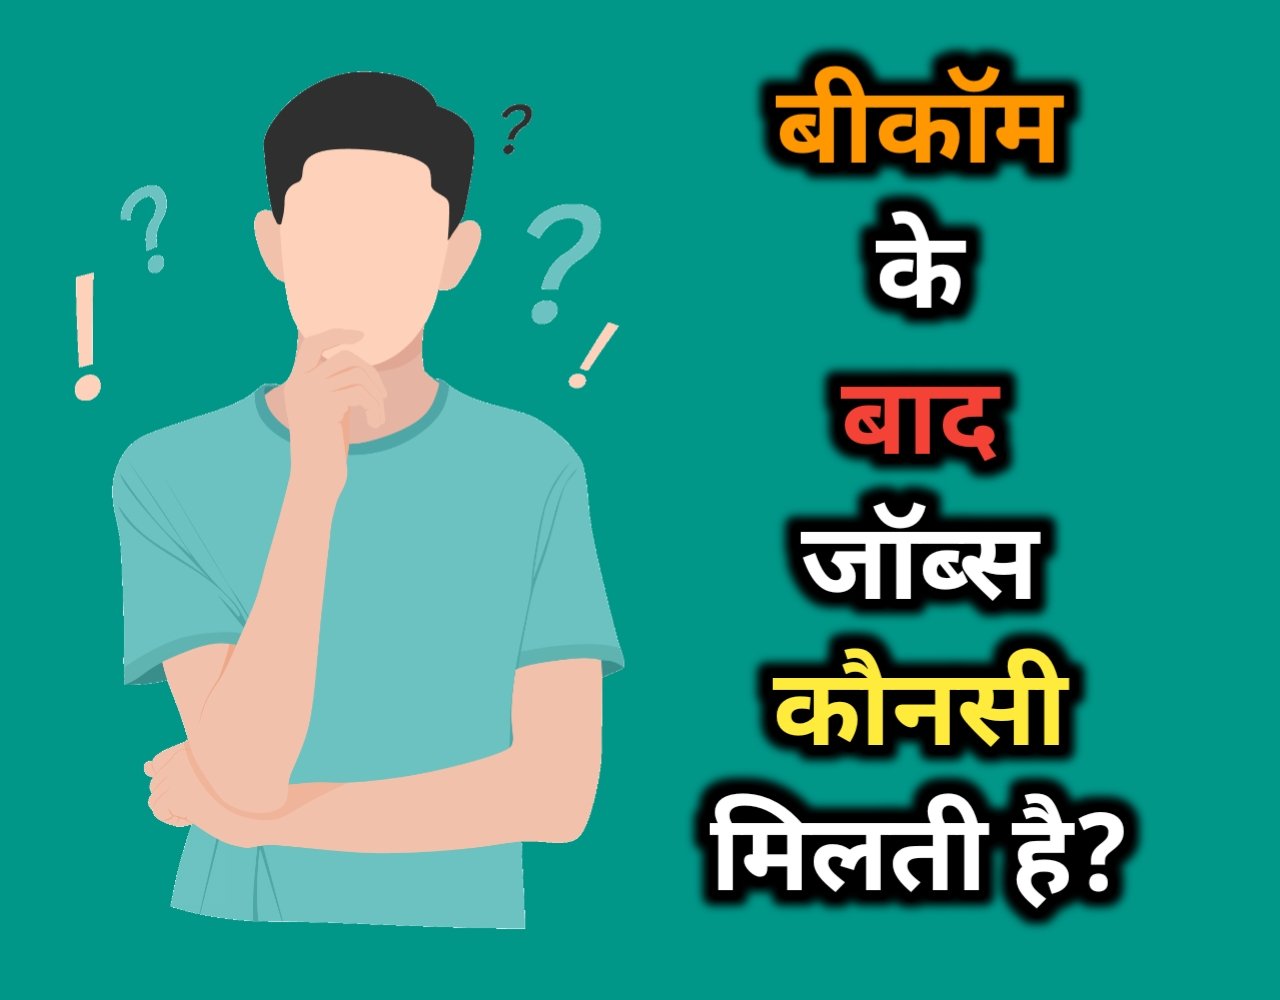 बीकॉम के बाद जॉब कौन सी मिलती है? | B.com Job List In Hindi